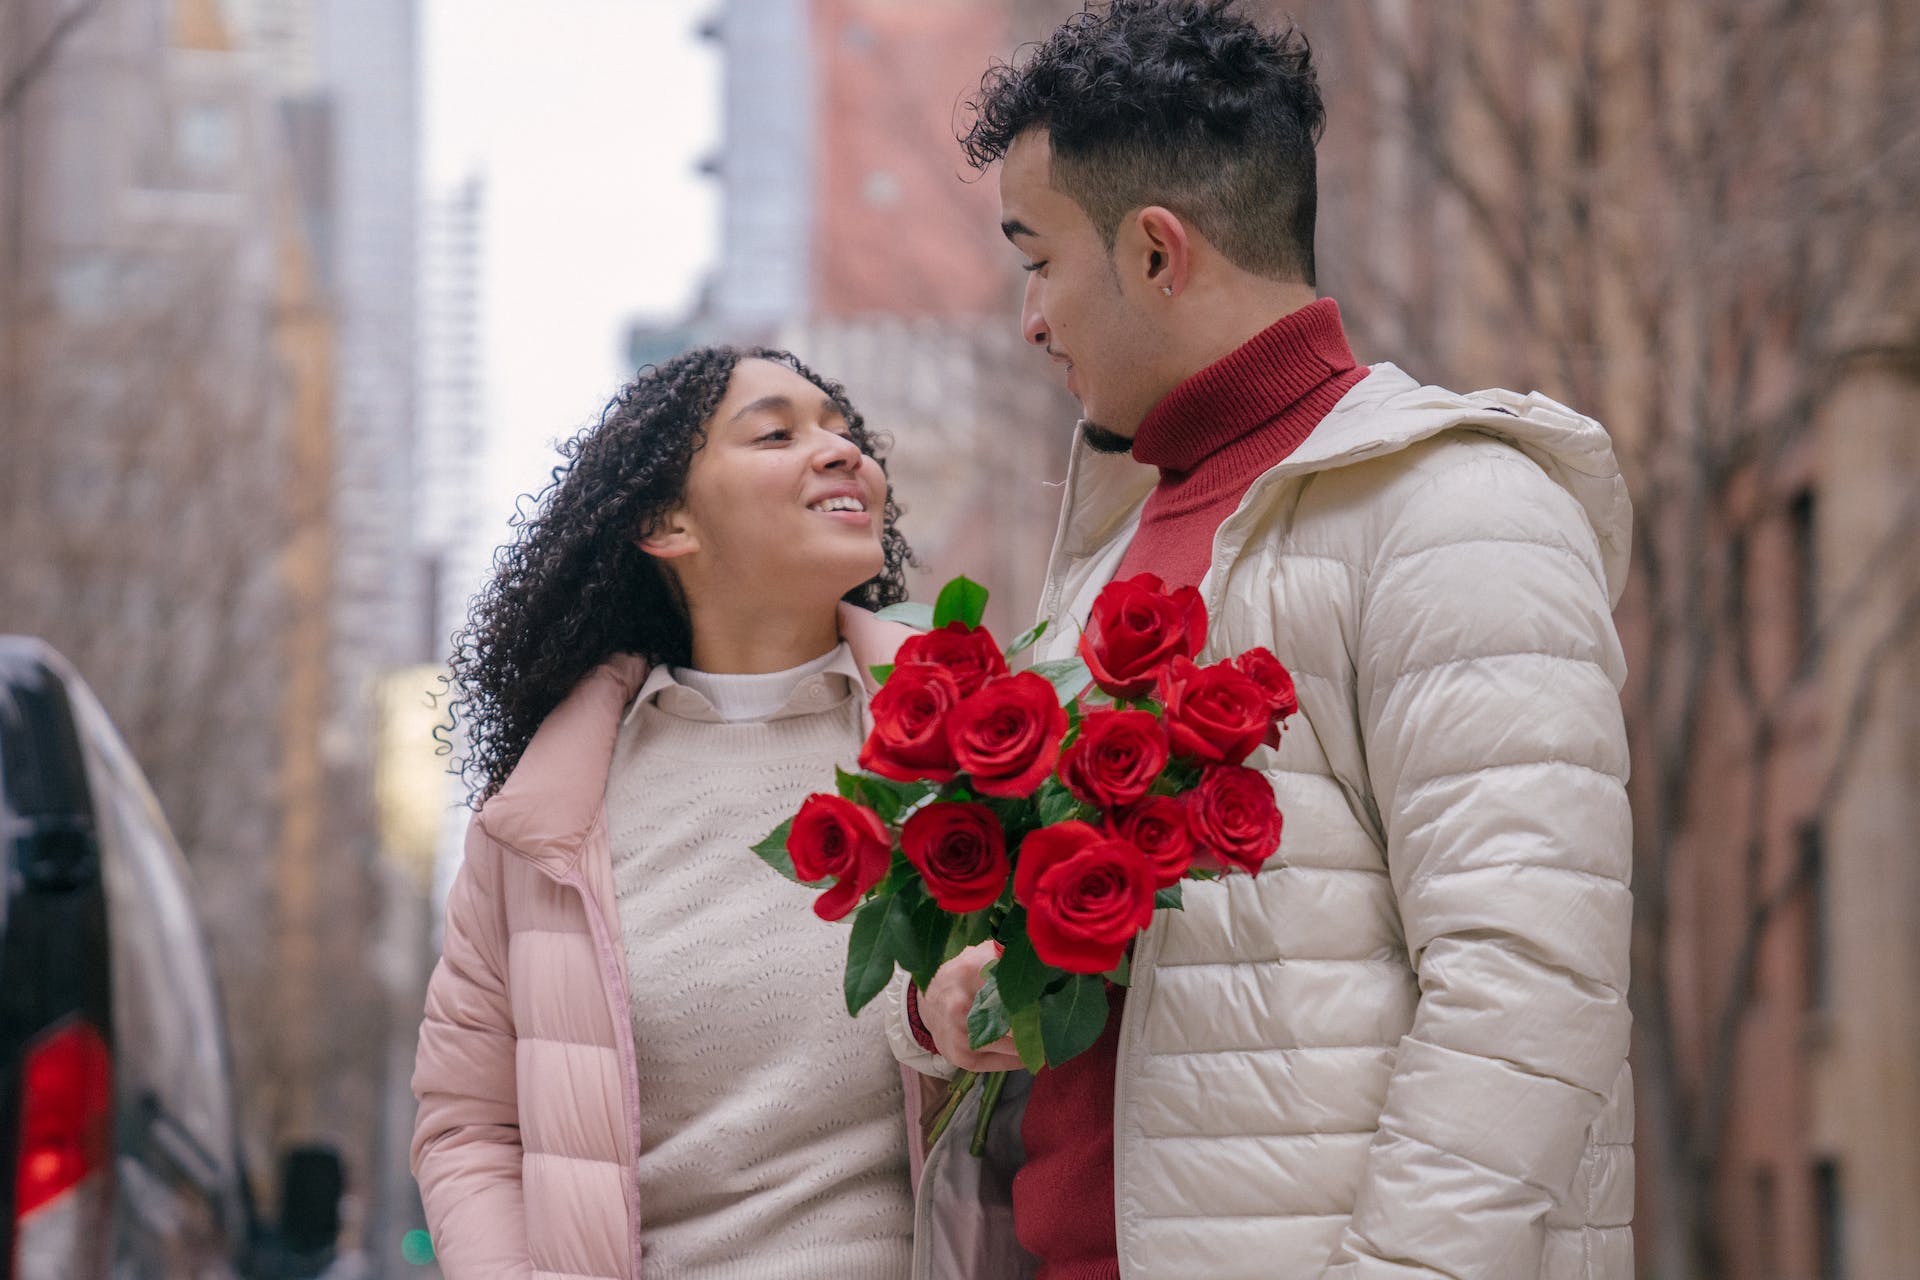 Mann hält rote Rosen für seine Geliebte | Quelle: Pexels